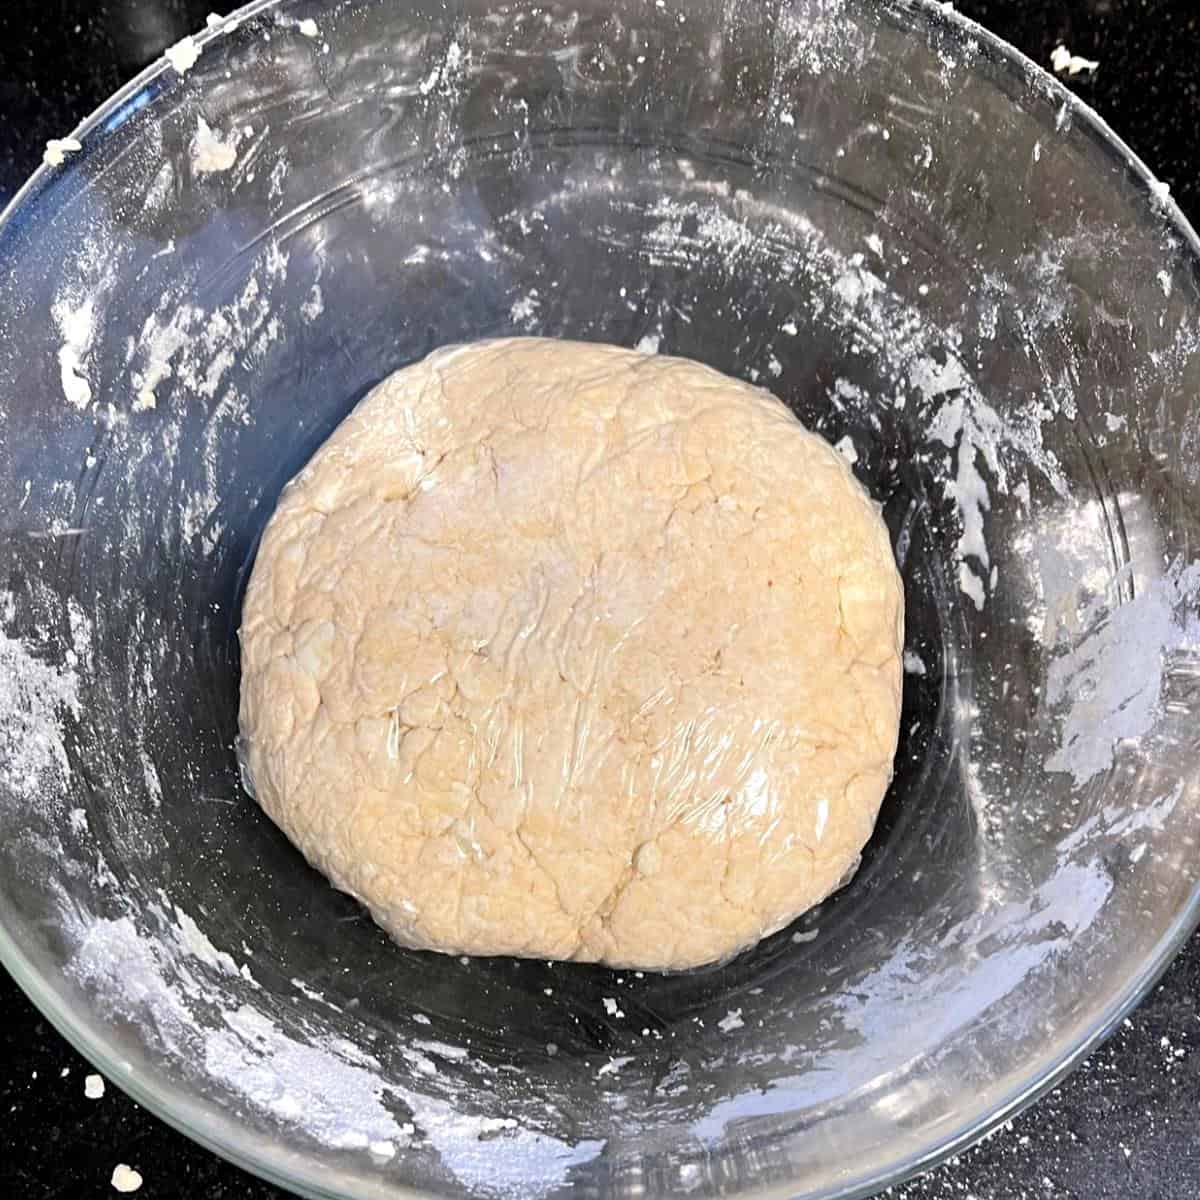 Vegan irish hand pie dough wrapped in cling wrap.